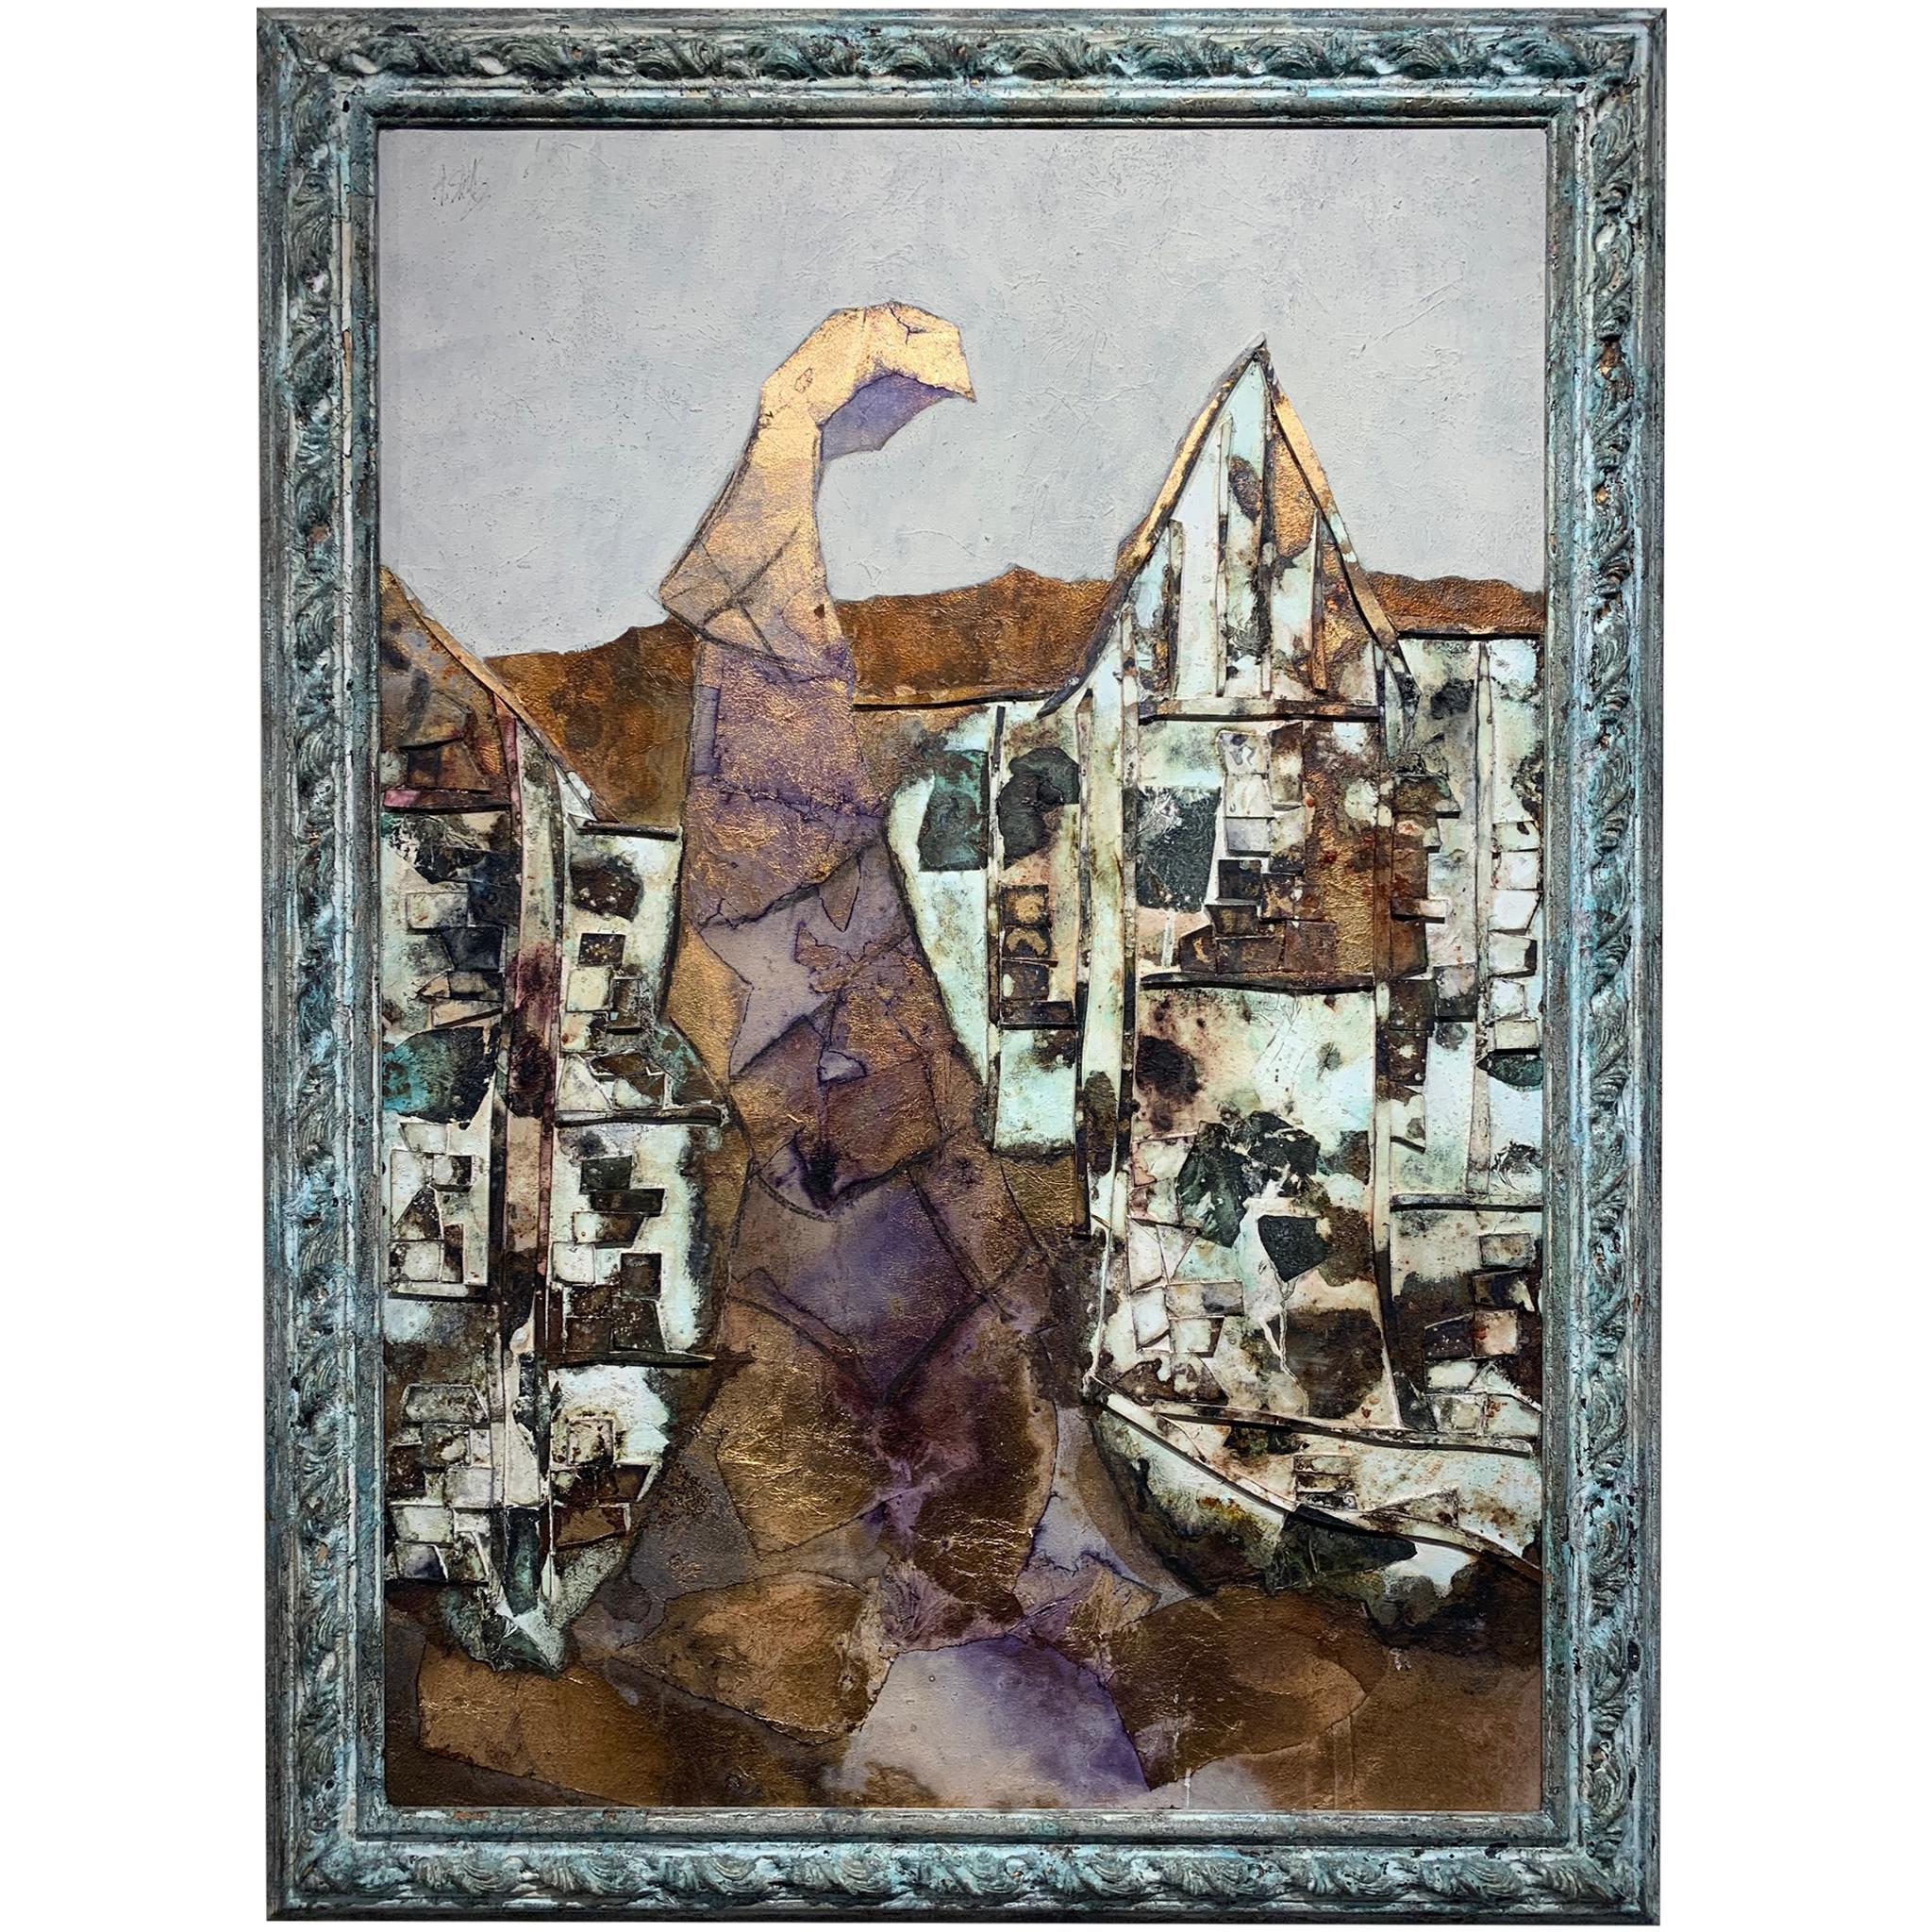 Frau des Dorfes –Andrea Stella-Figuratives abstraktes Gemälde mit gemischten Medien (Zeitgenössisch), Mixed Media Art, von ANDREA STELLA